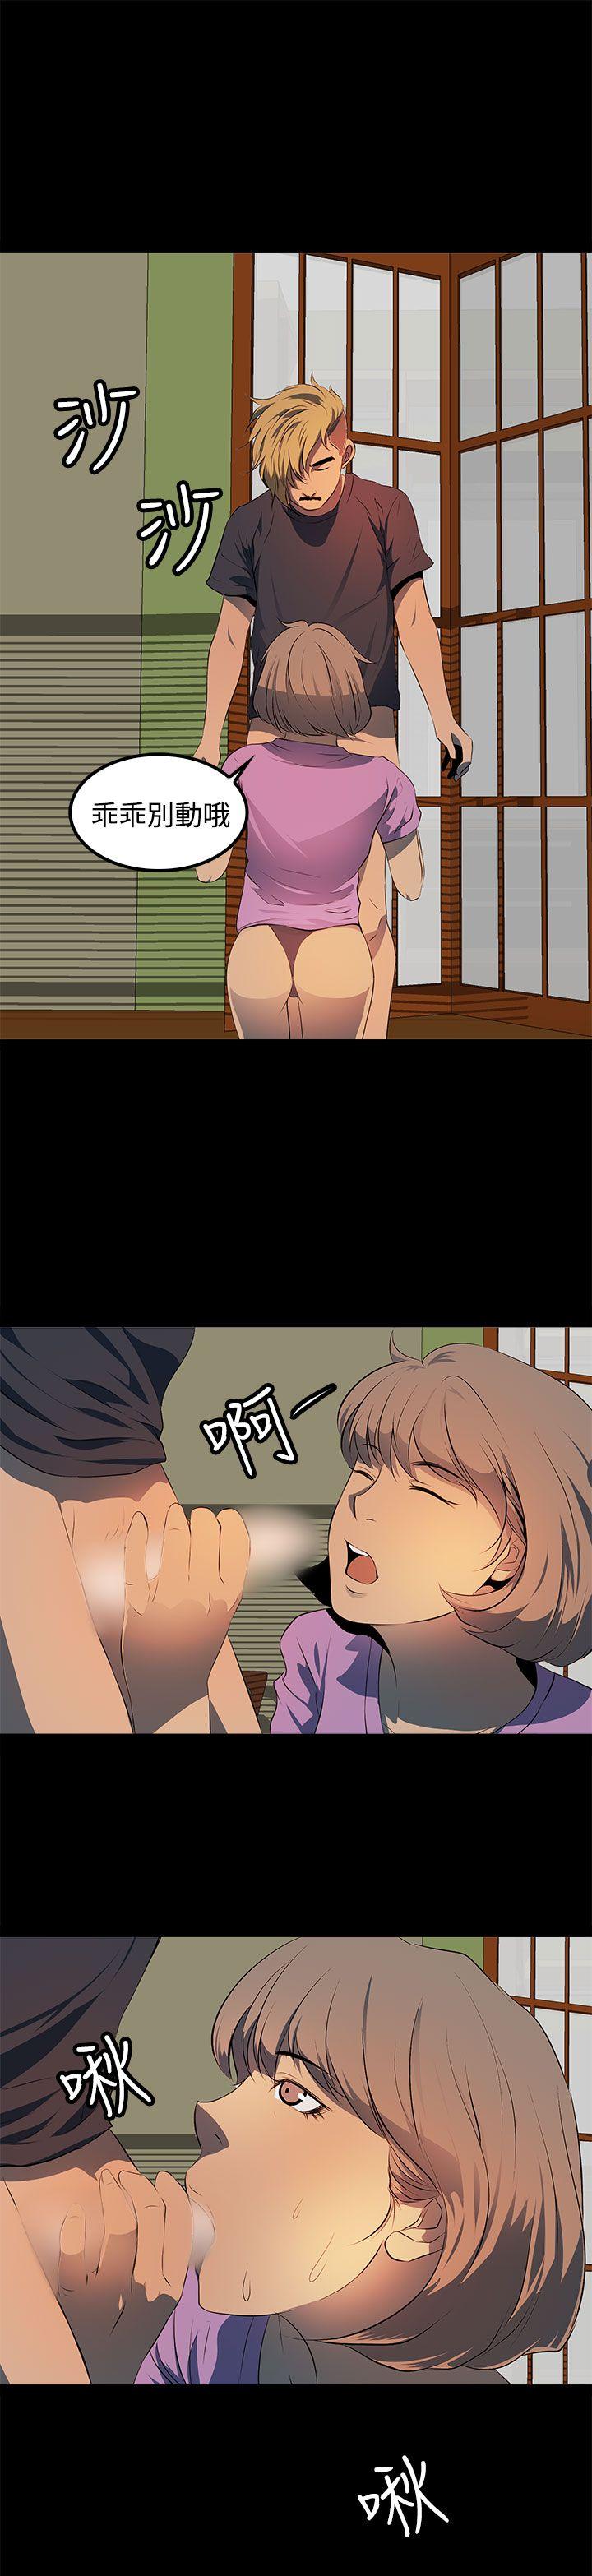 韩国污漫画 人妻的秘密 第11话 27